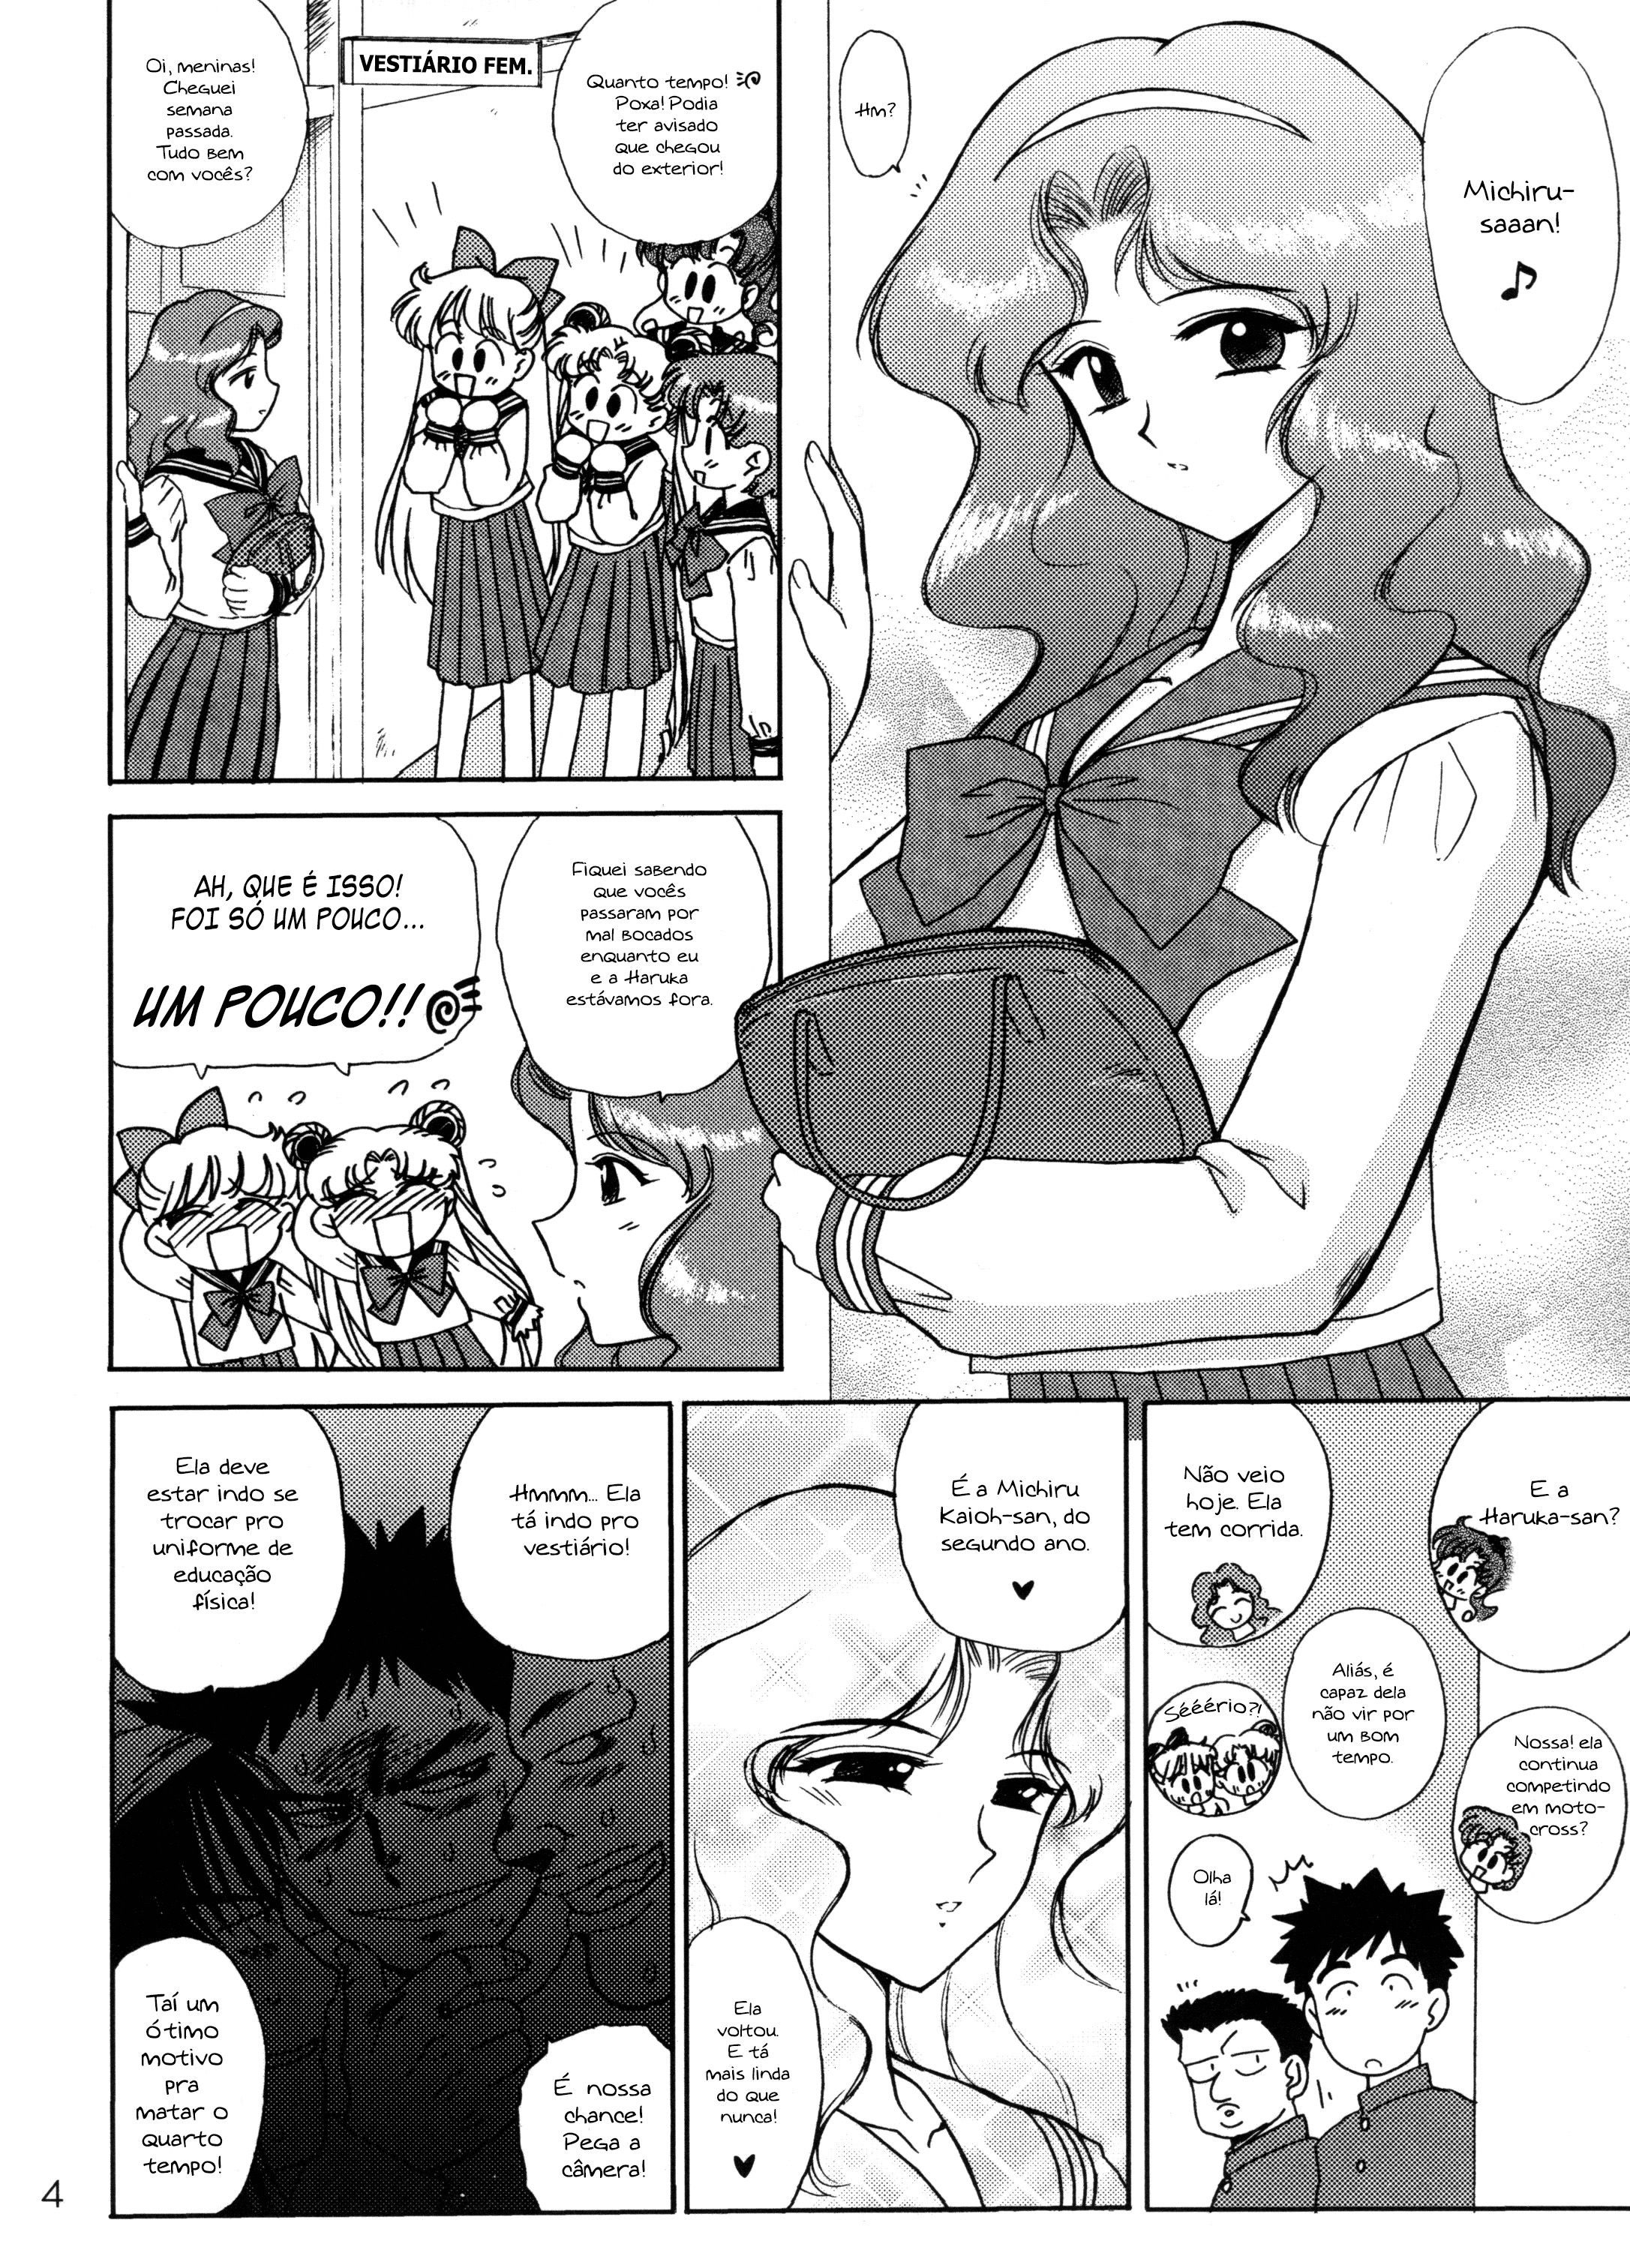 Sailor Moon na escola hentai